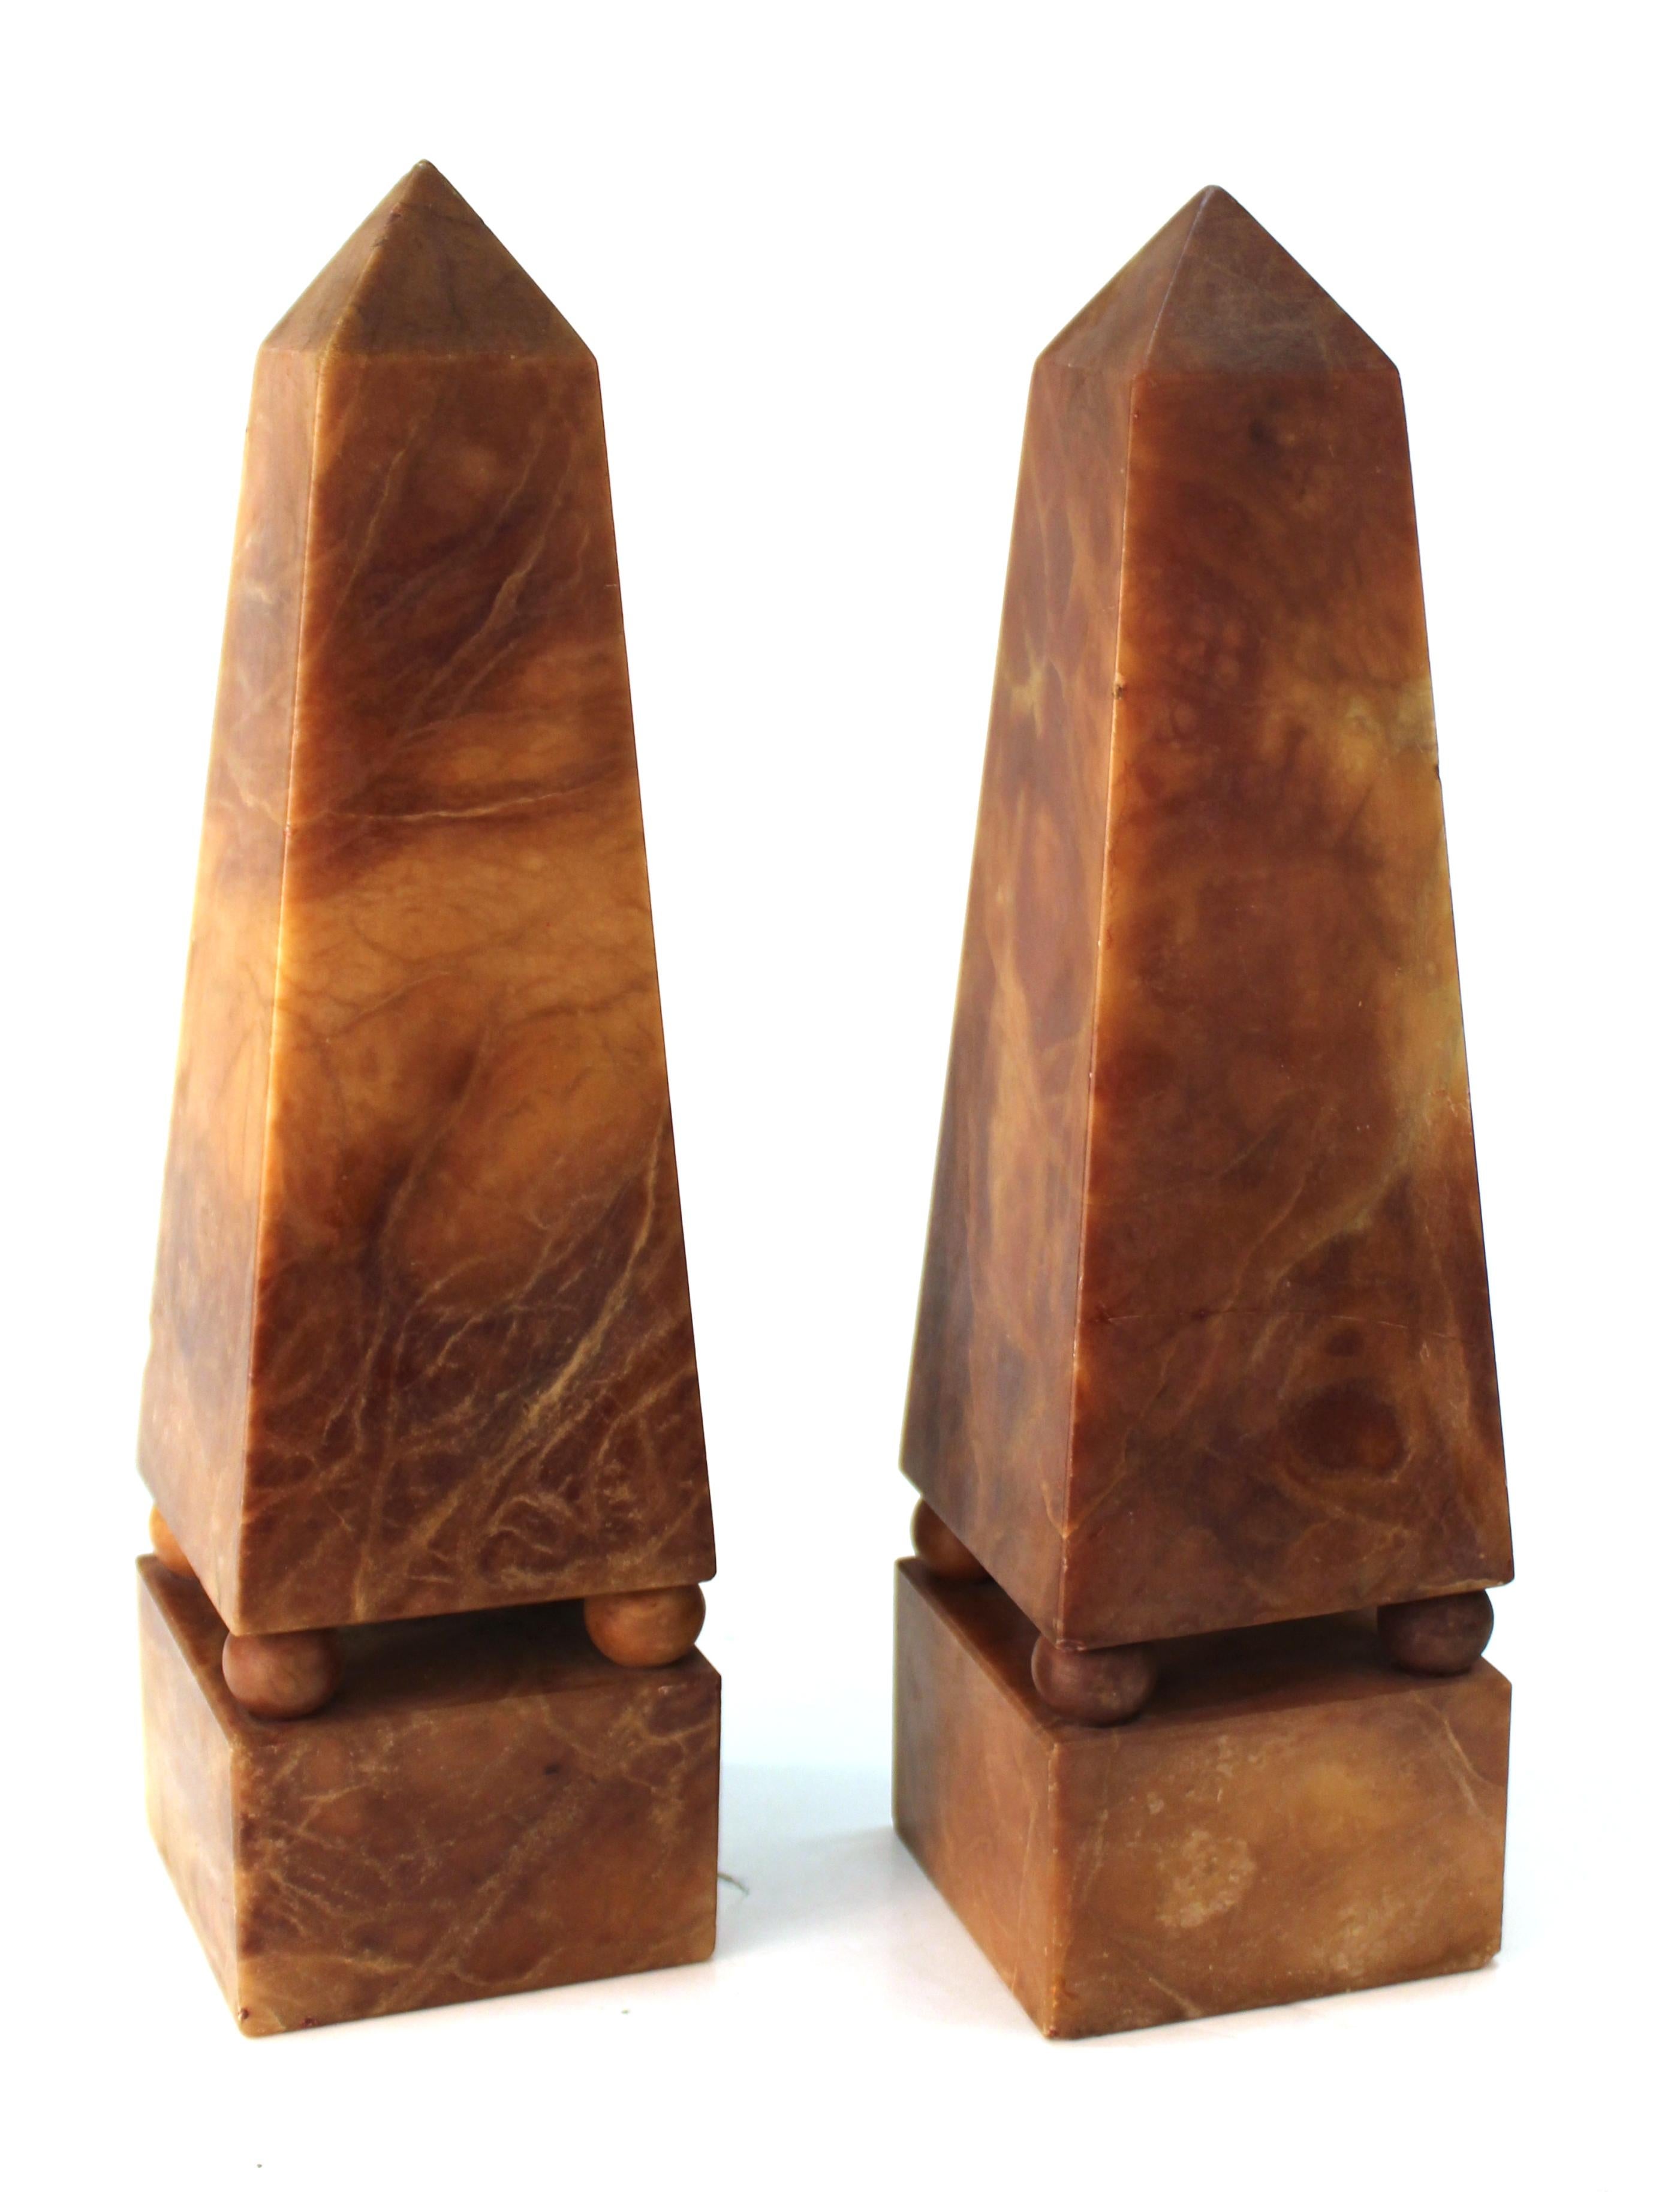 Paire d'obélisques de style néoclassique, datant du 19e siècle, en albâtre brun éteint. La paire a été fabriquée en Italie et est en excellent état, avec une certaine usure due à l'âge et un petit éclat au sommet de l'un des obélisques.